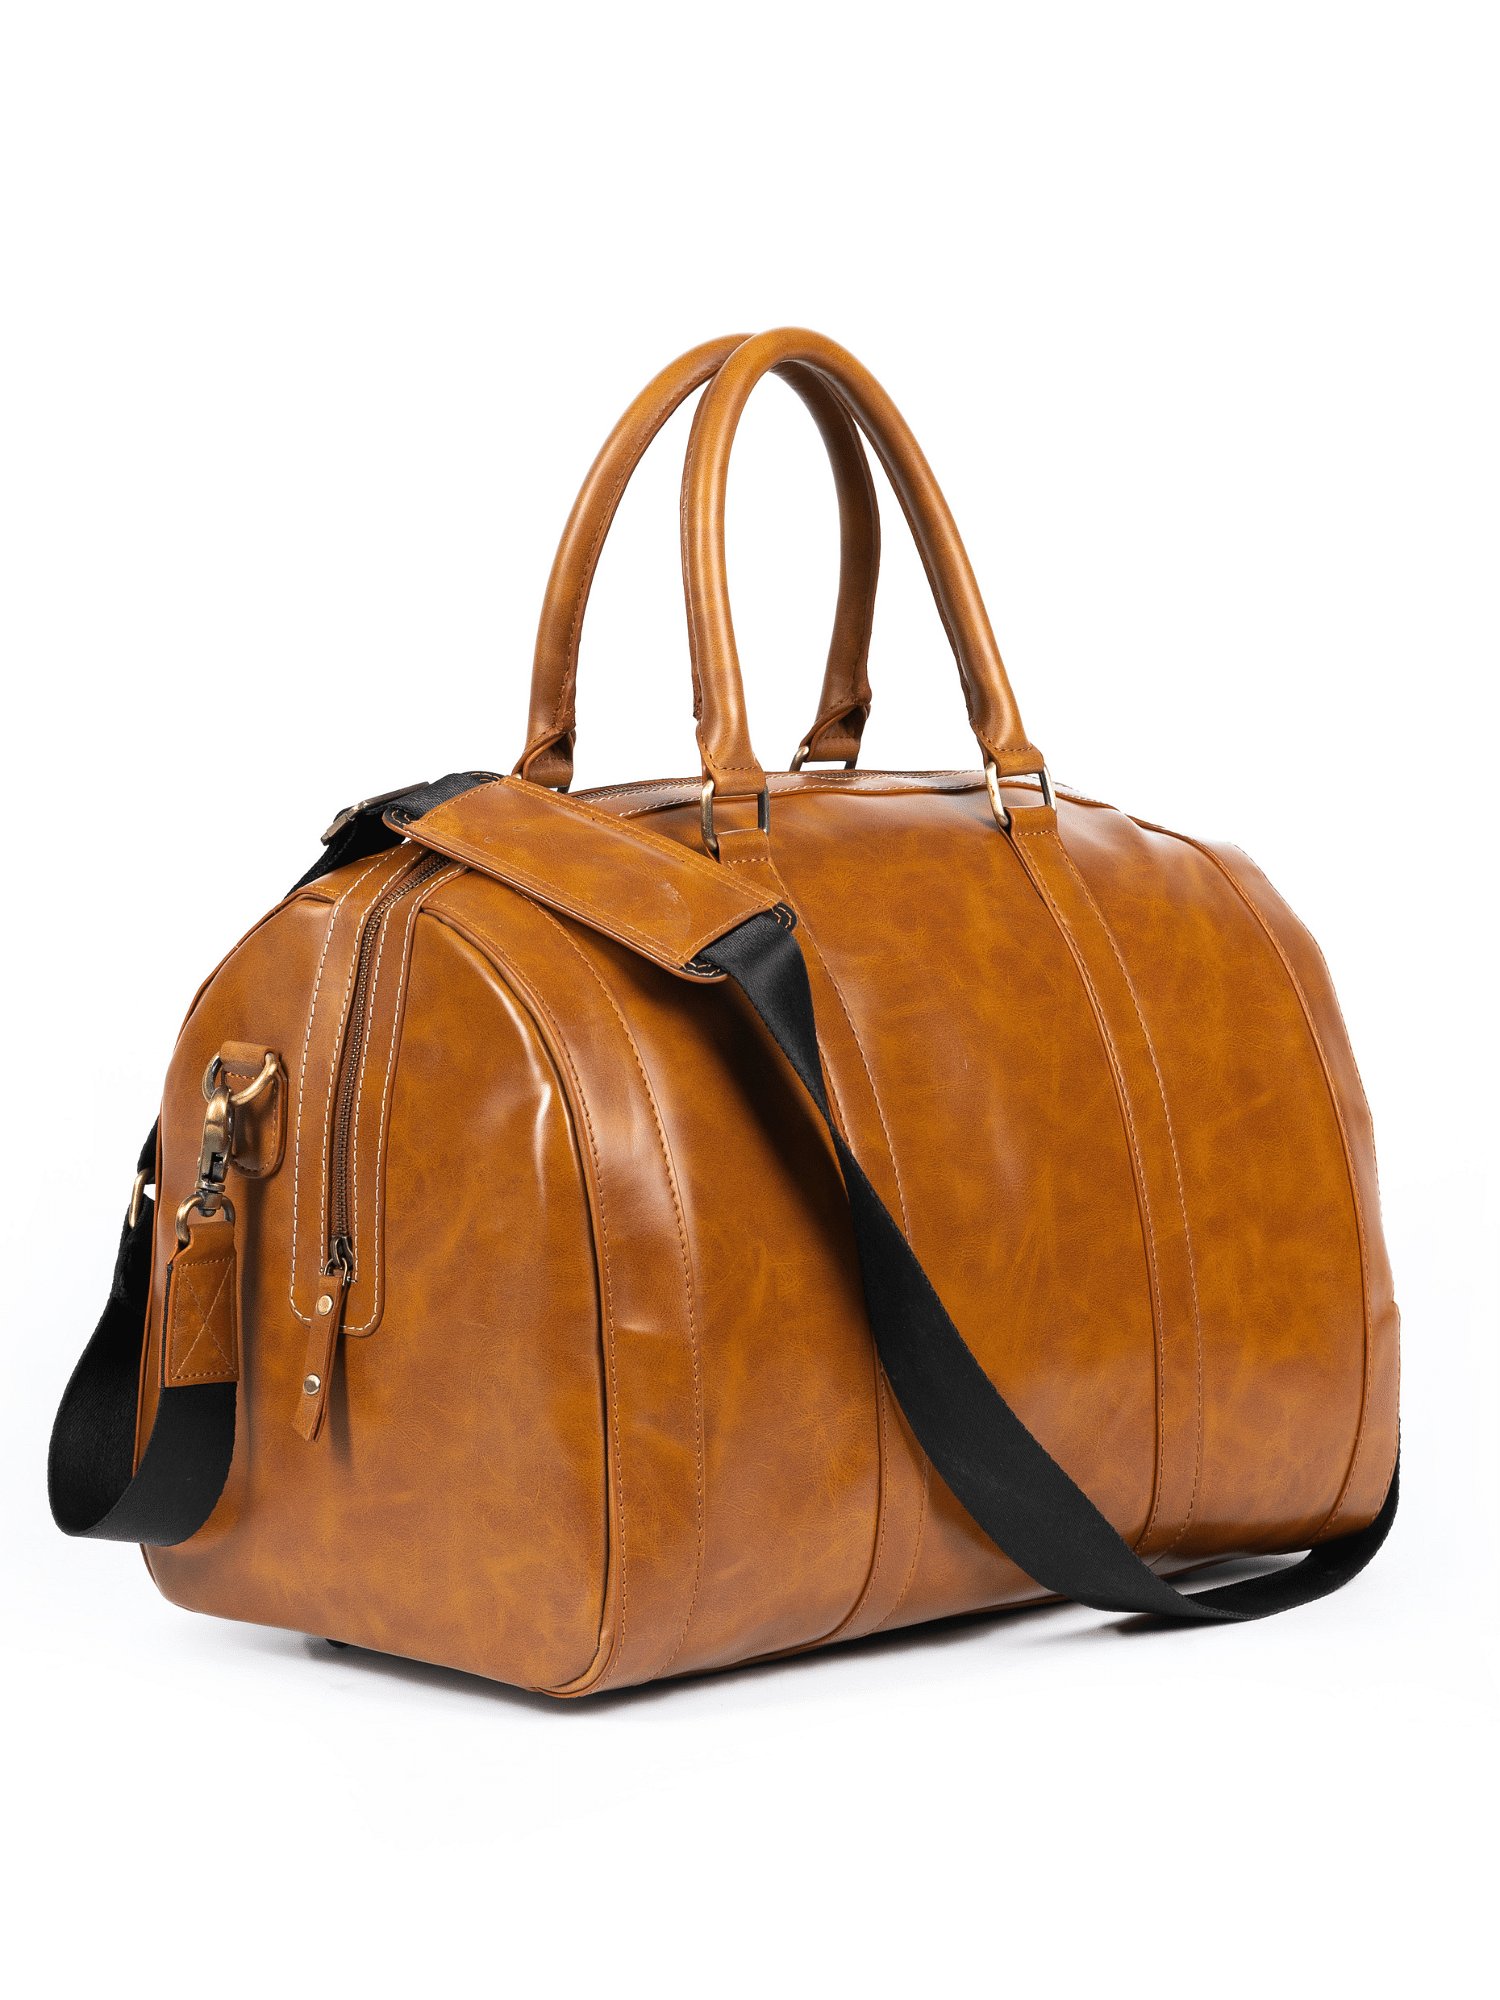 The Perfect Weekender Bag: Brown